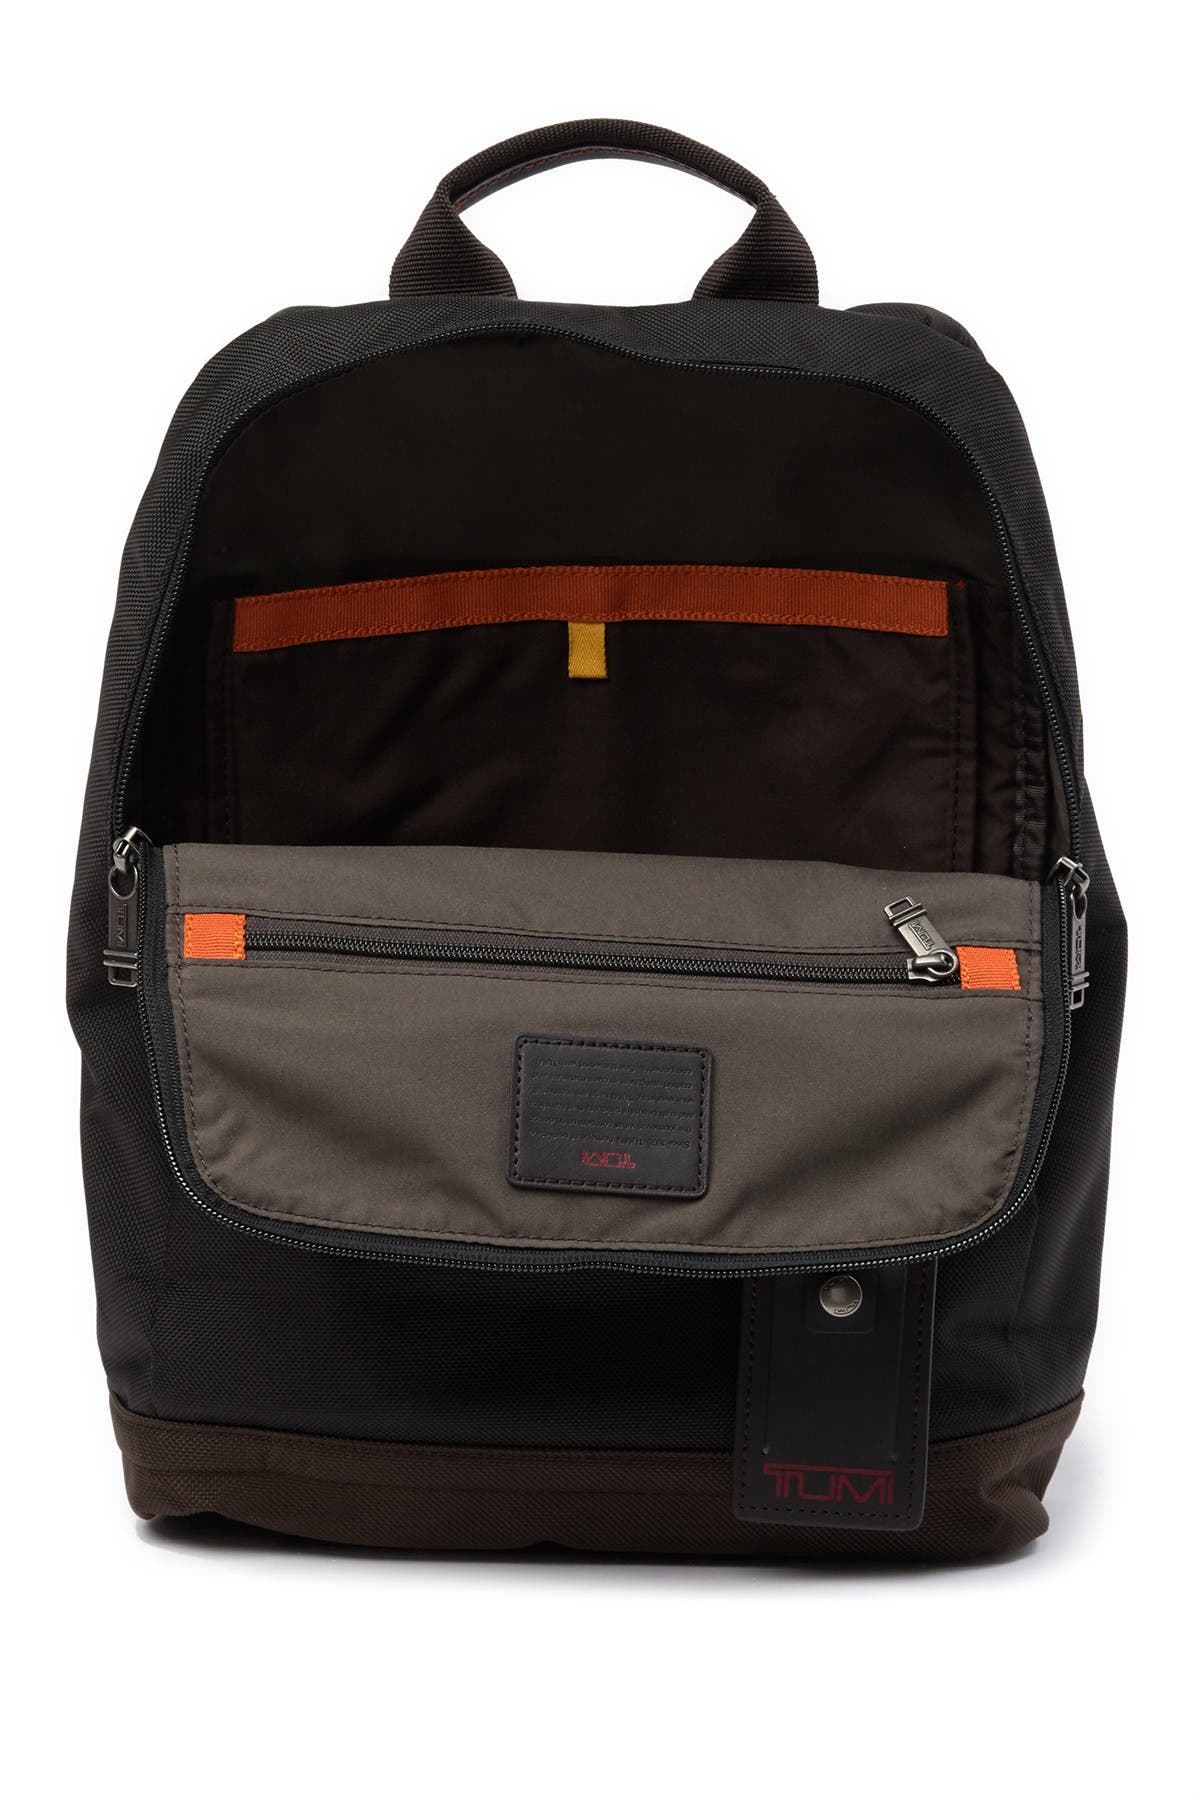 Tumi Westwood Slim Backpack In Black